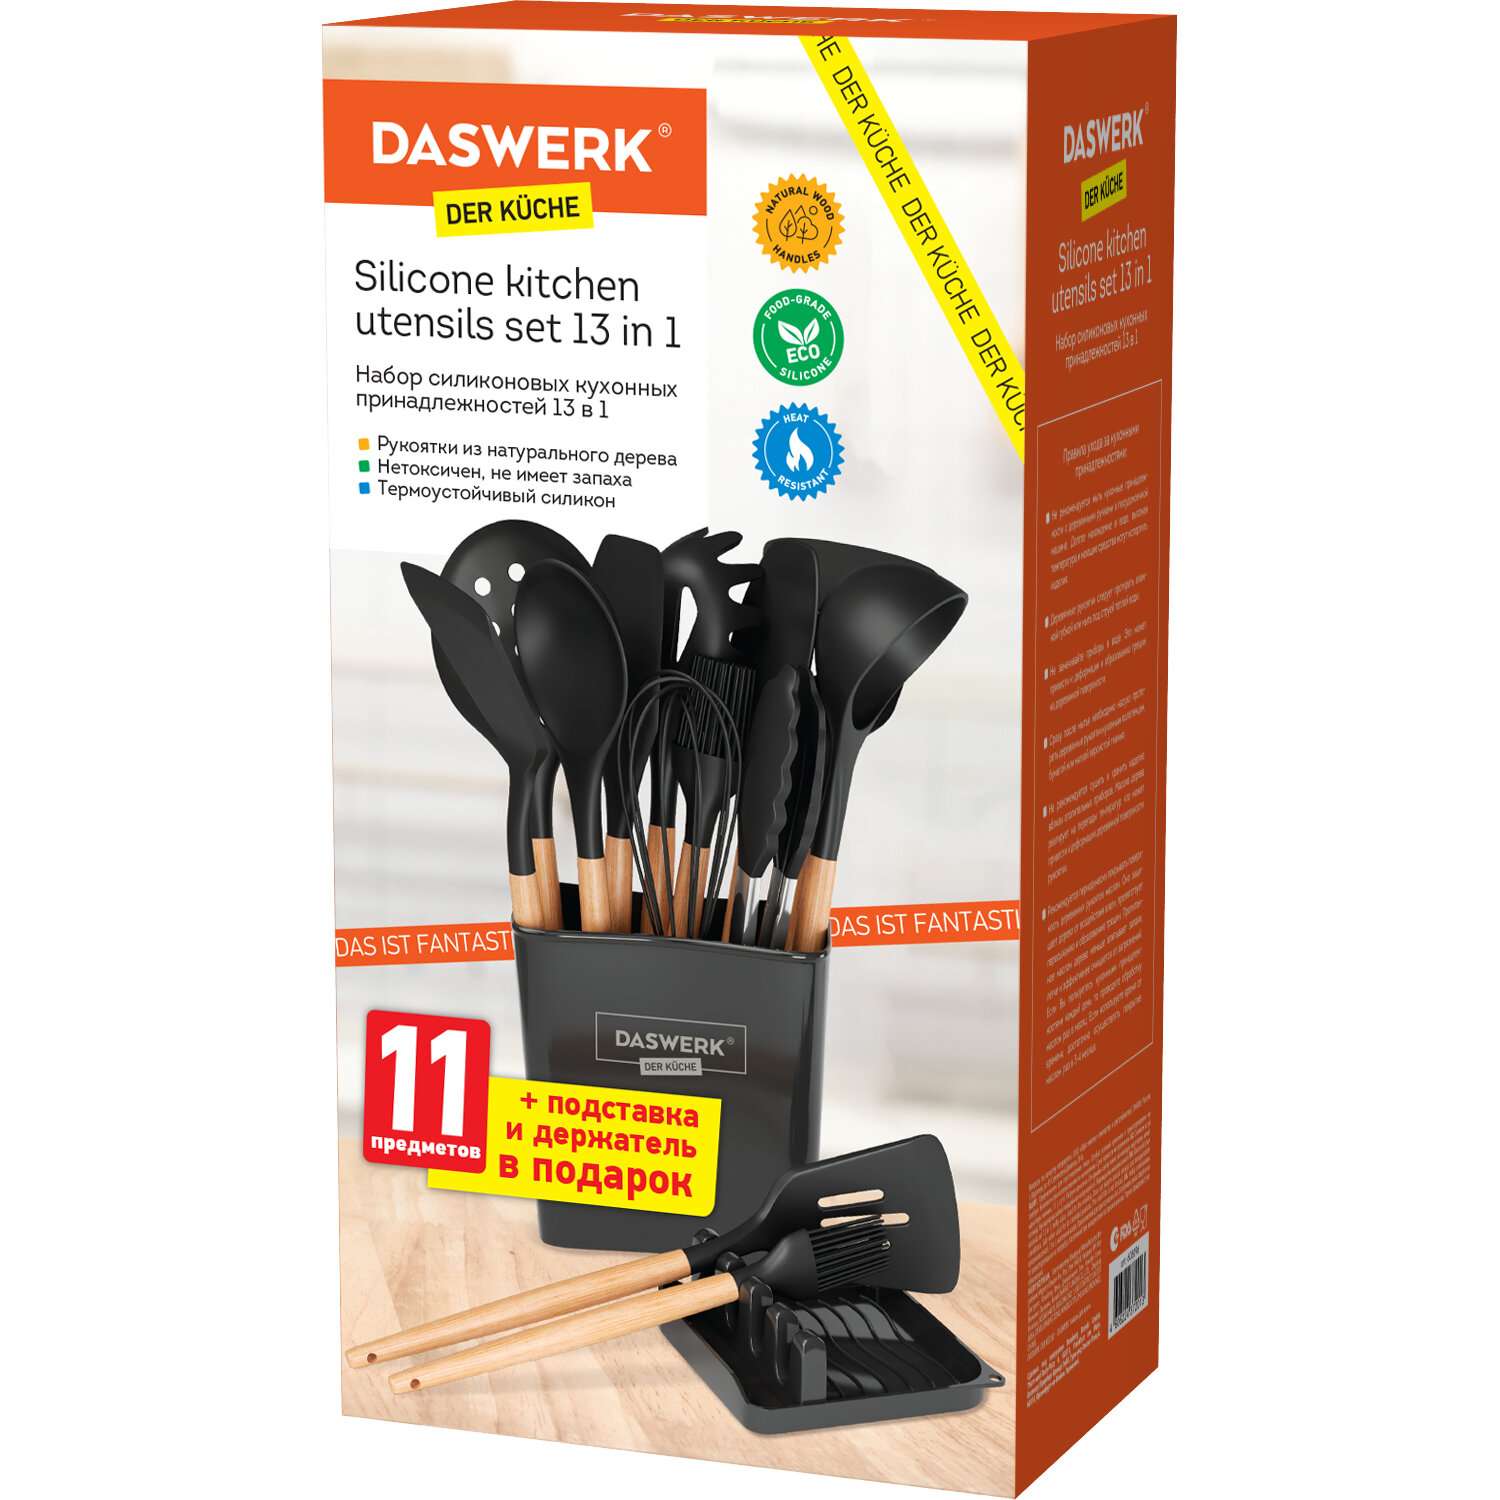 Набор кухонных принадлежностей DASWERK силиконовые с деревянными ручками 13 в 1 - фото 15